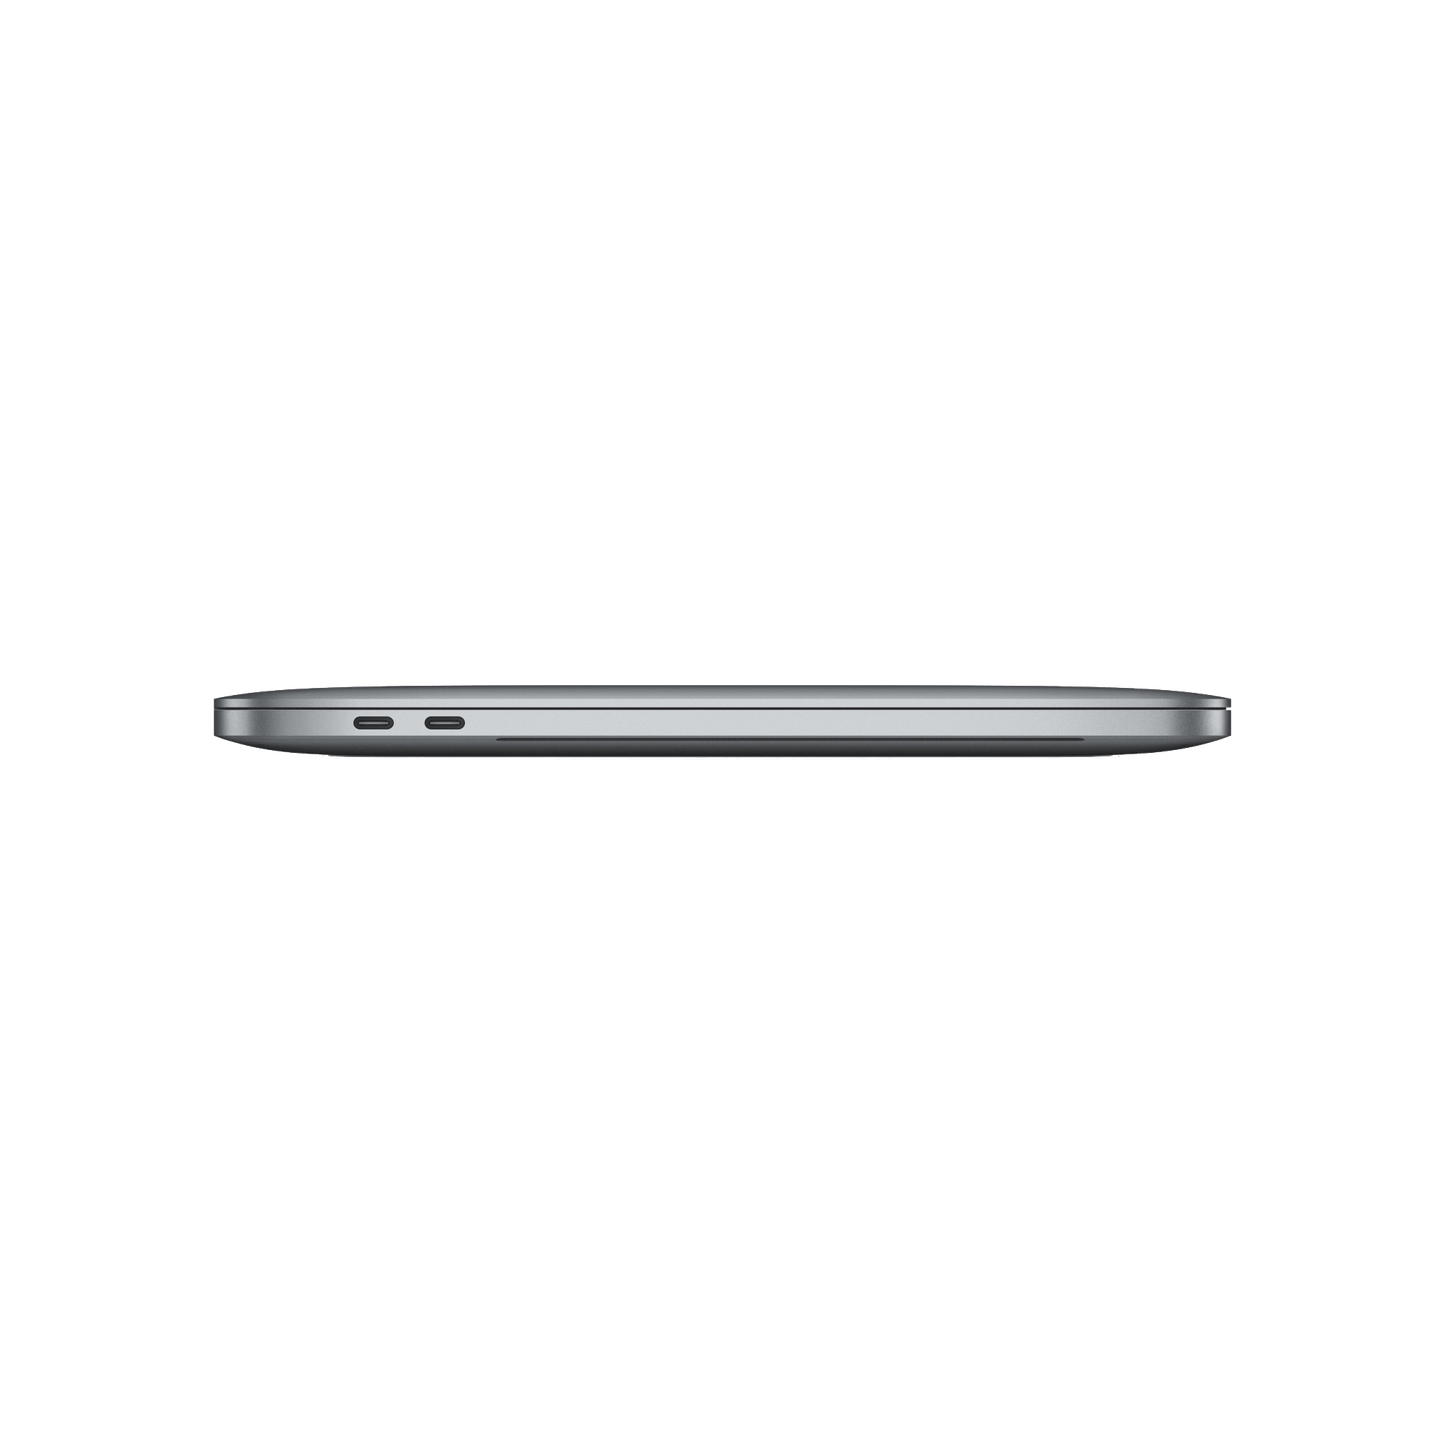 Refurbished MacBook Pro Touchbar 13" i5 2.3 8GB 256GB 2018 - test-product-media-liquid1